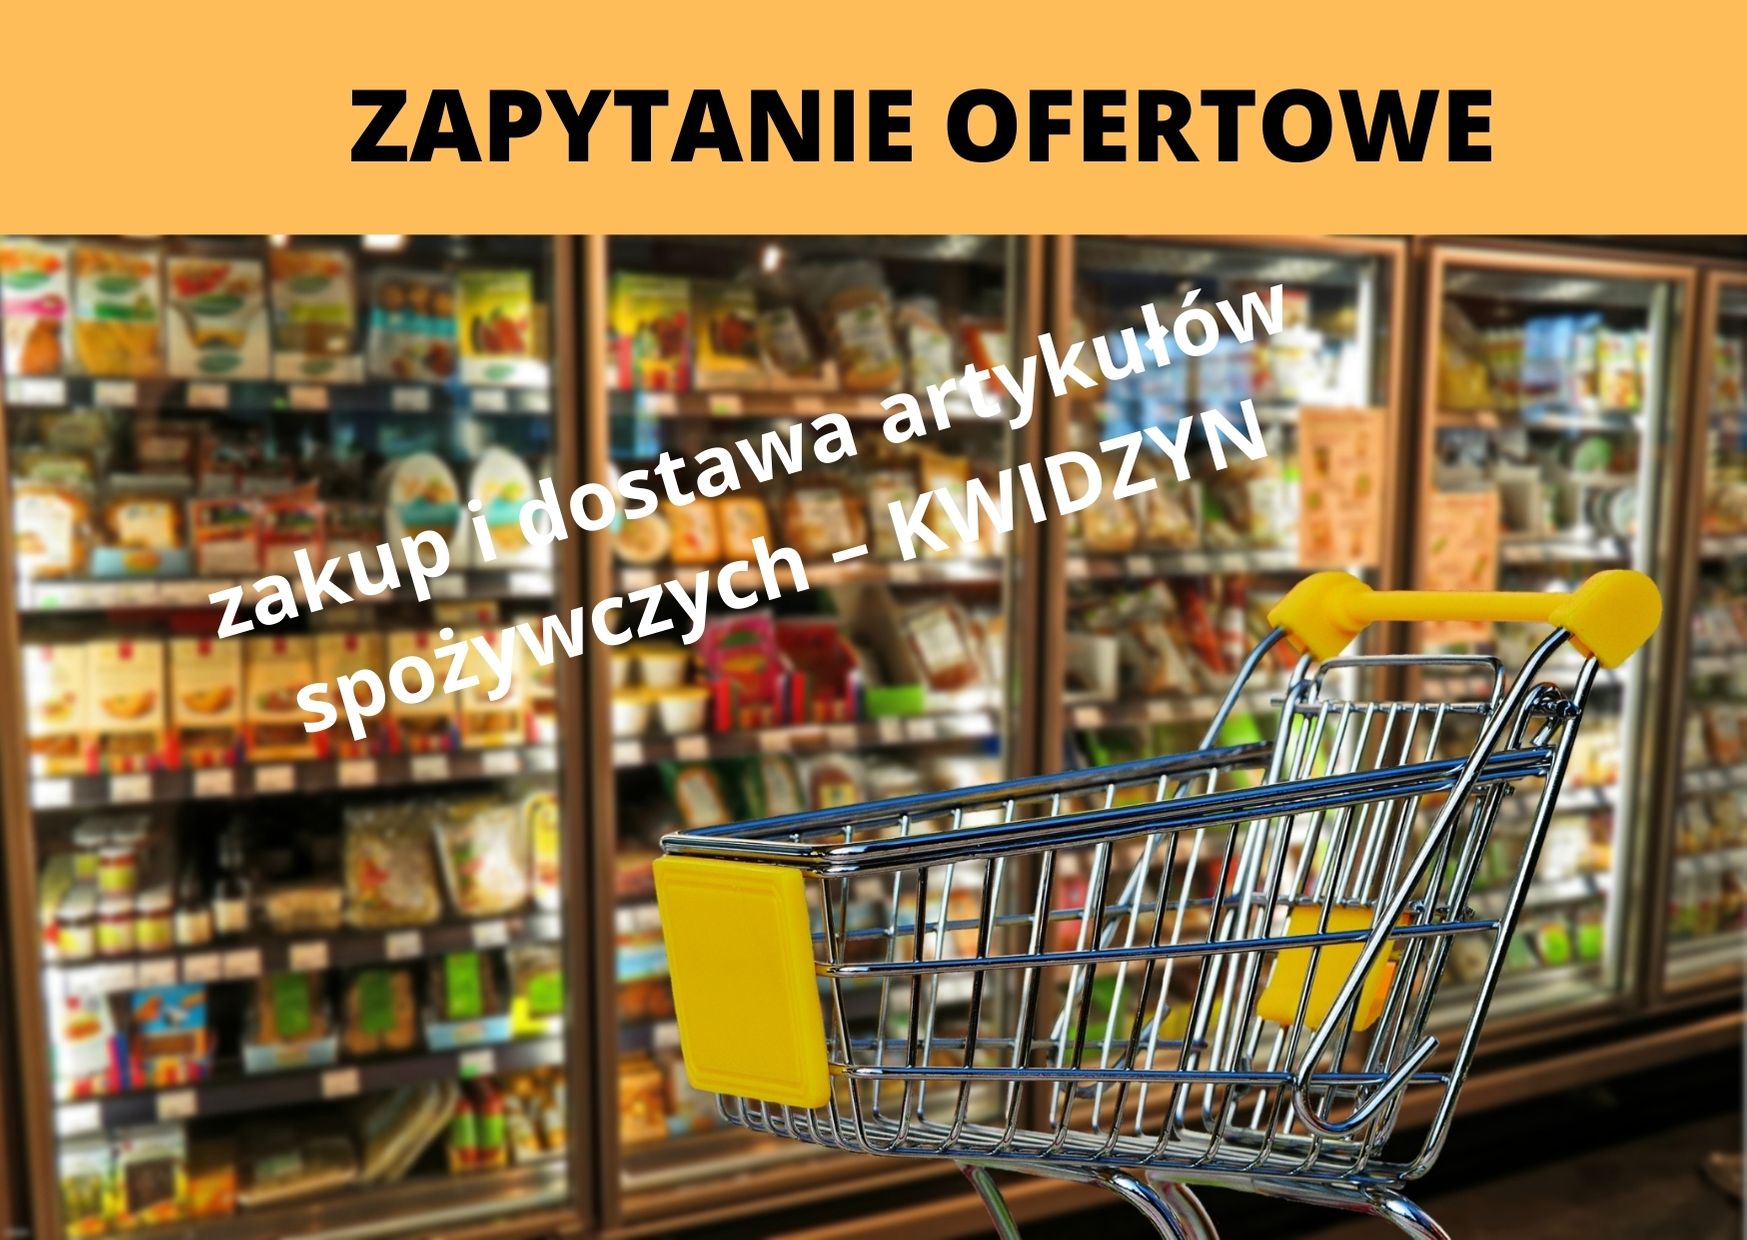 ZAPYTANIE OFERTOWE 07/0092/2021 – zakup i dostawa artykułów spożywczych – Kwidzyn, RPPM.06.02.02-22-0092/20